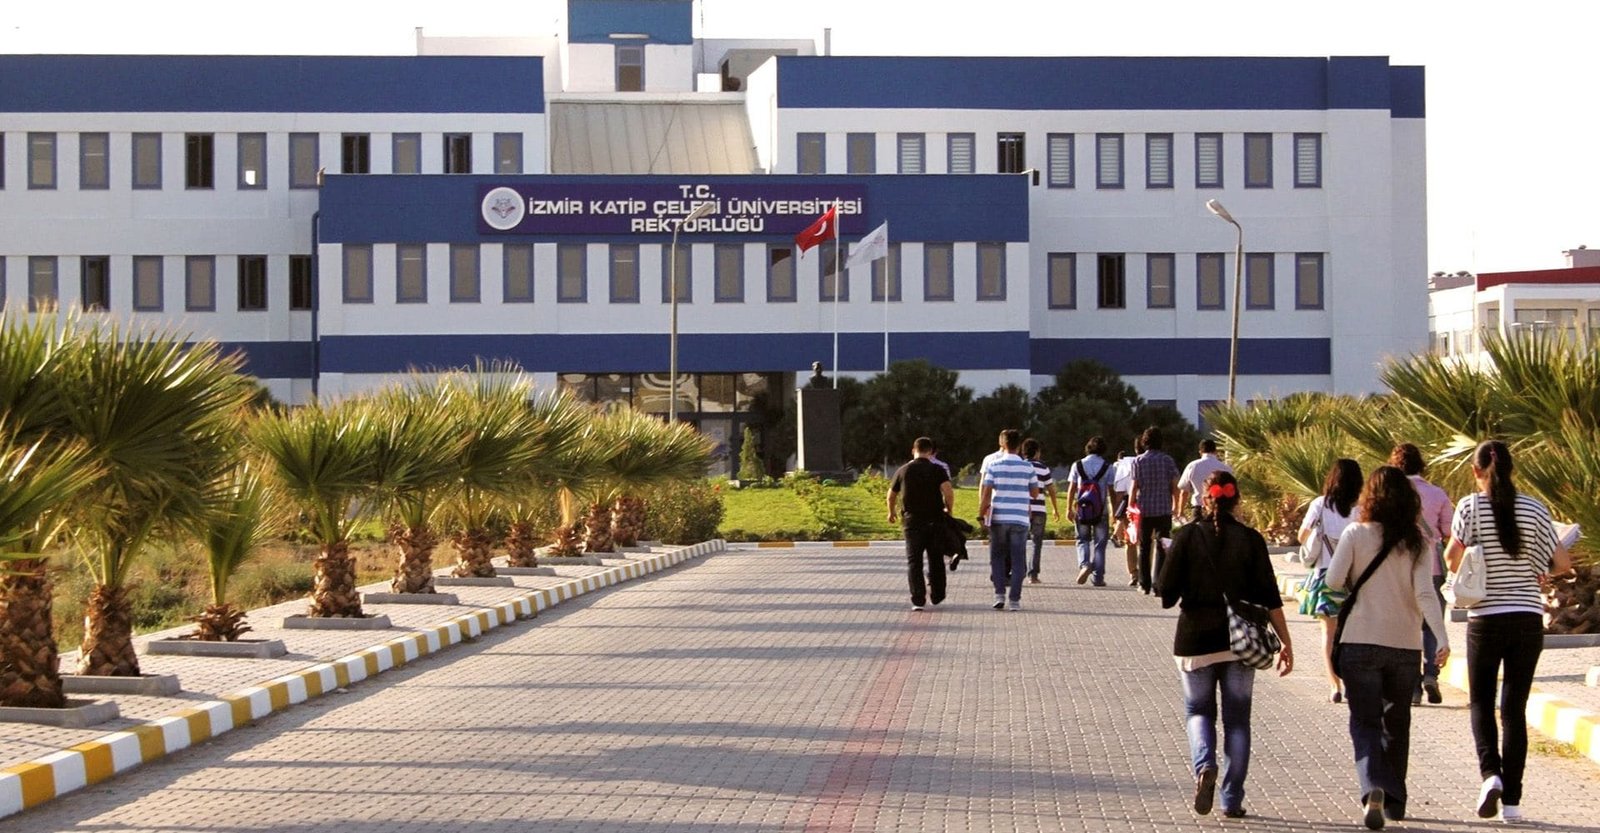 T.C. İzmir Katip Çelebi Üniversitesi